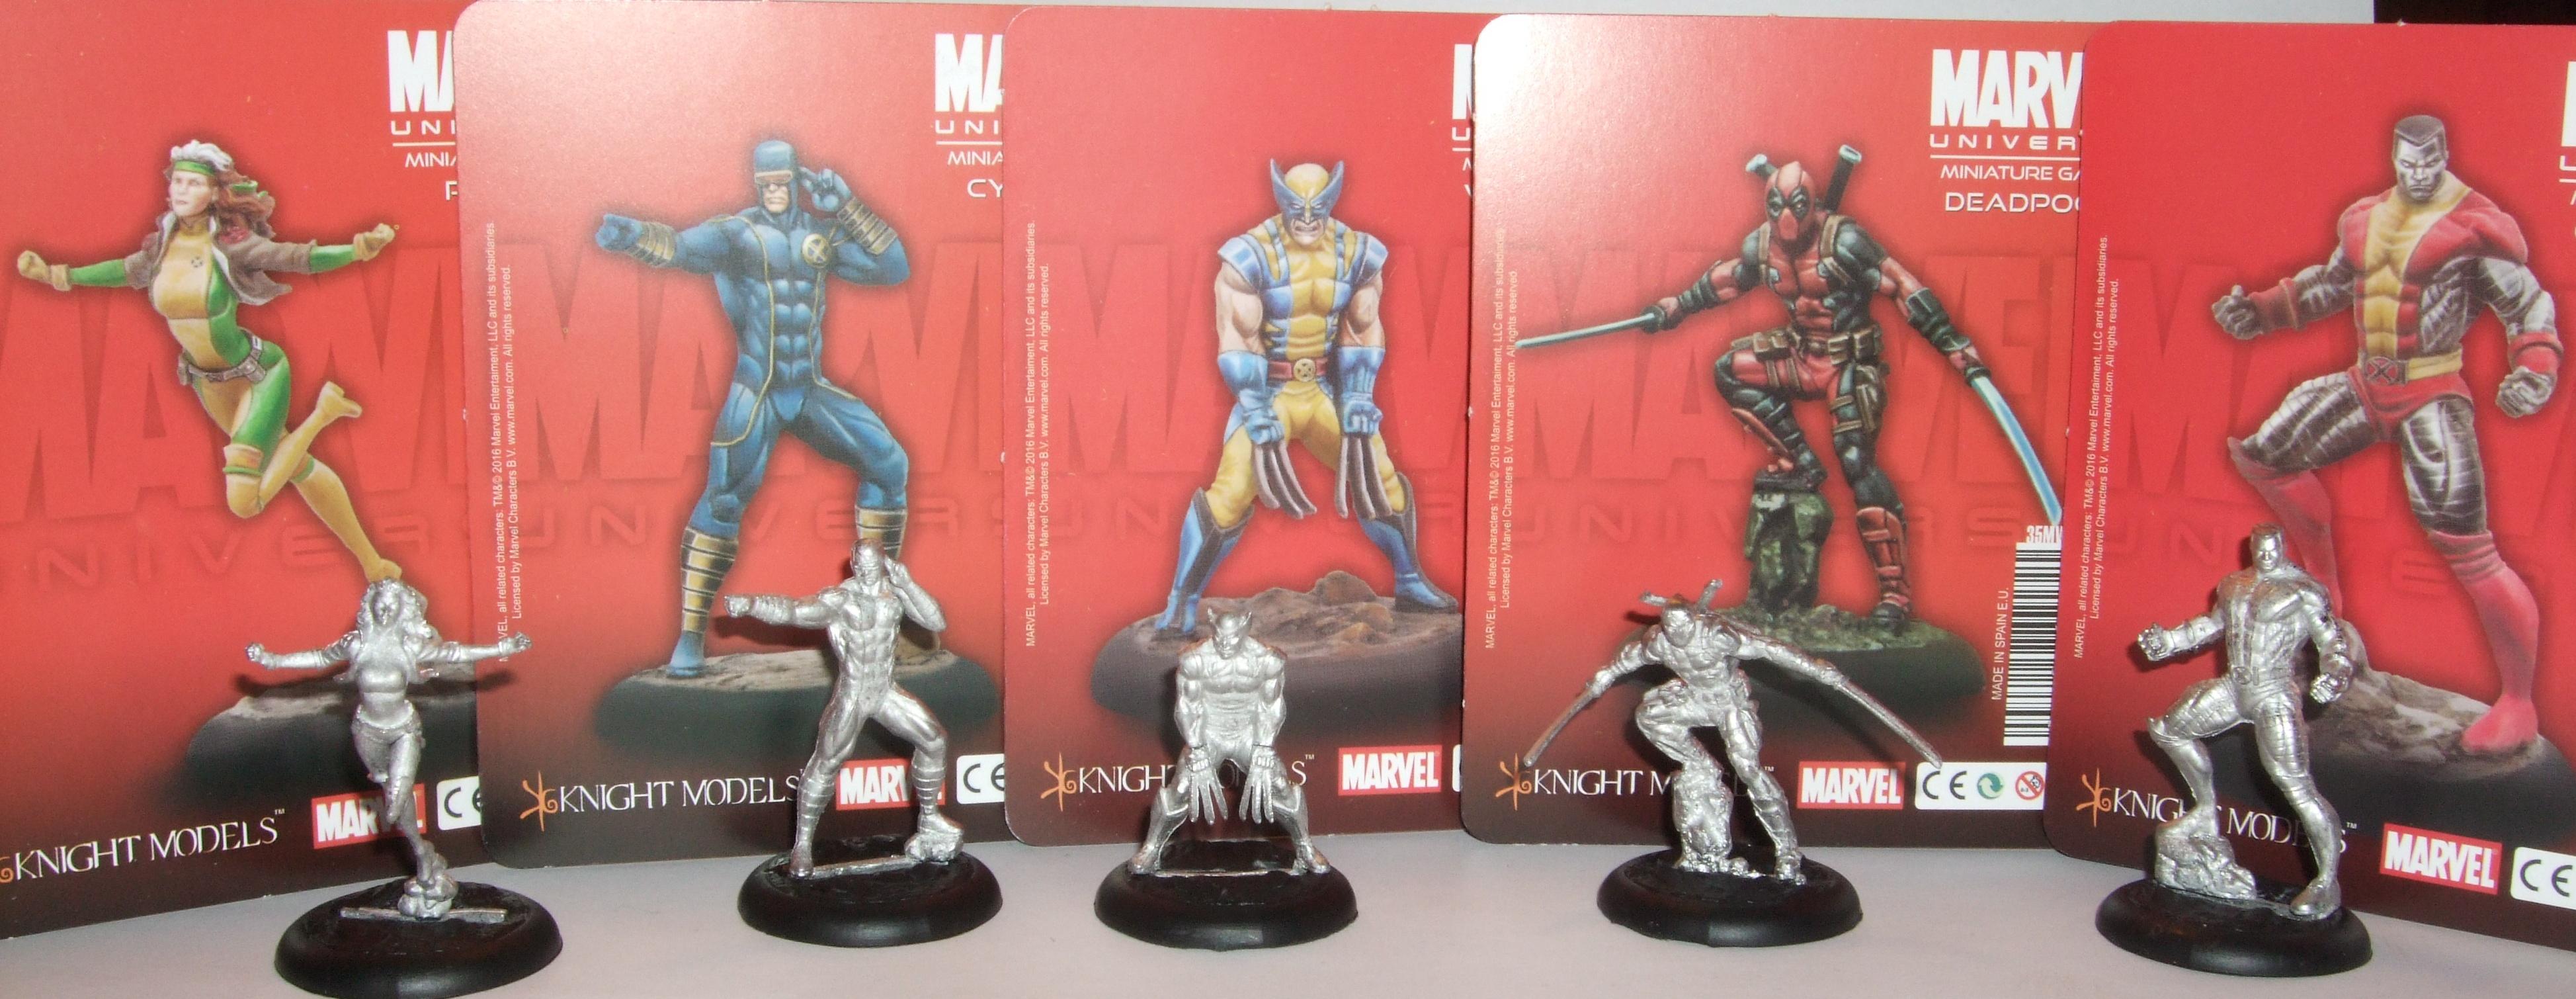 Deadpool, Knightmodels, Marvel, Wolverine, X-men